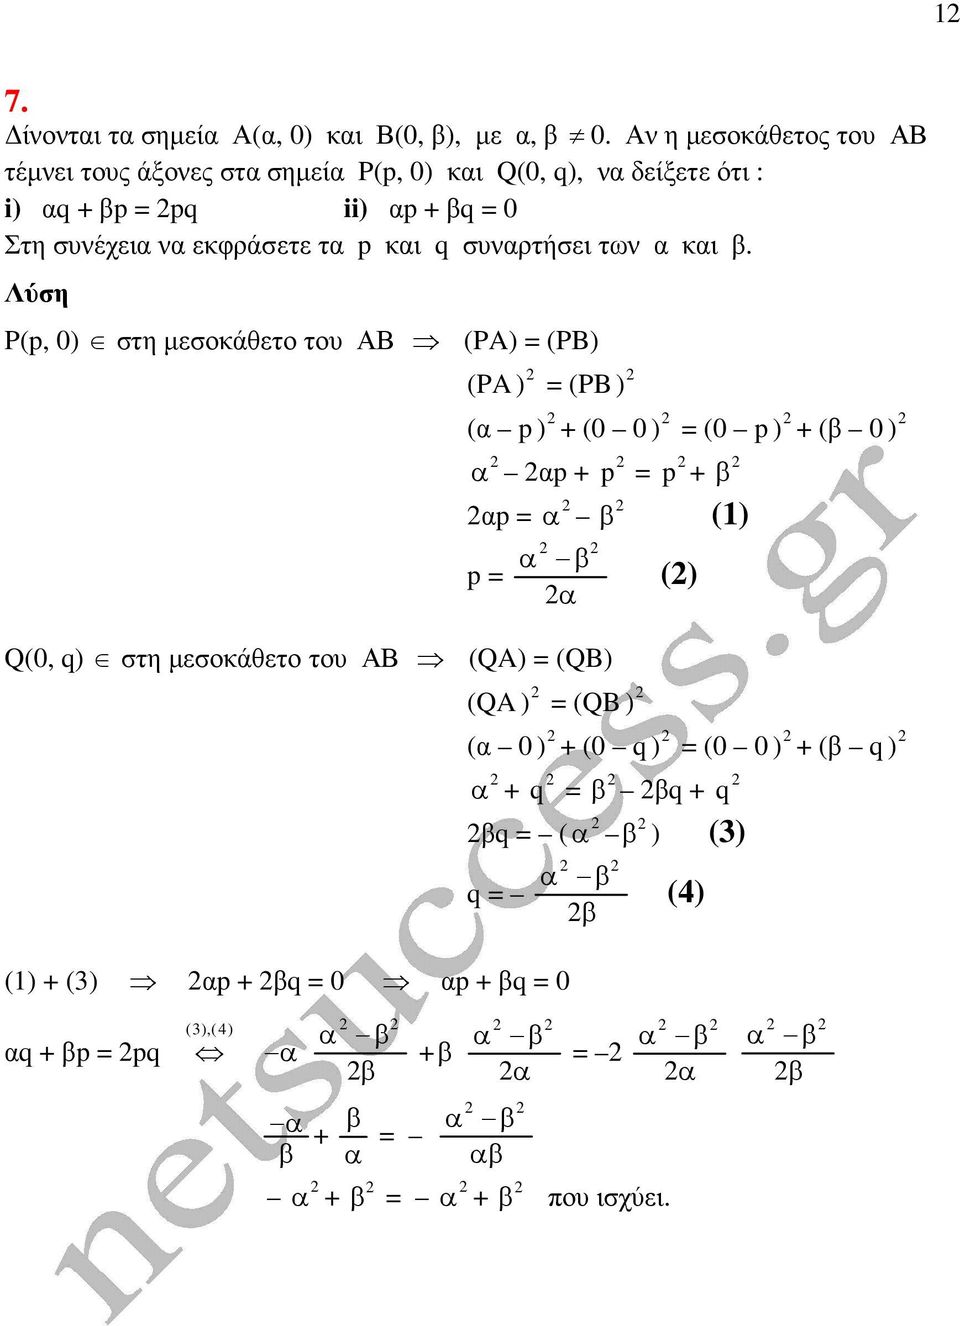 p και q συναρτήσει των α και β.